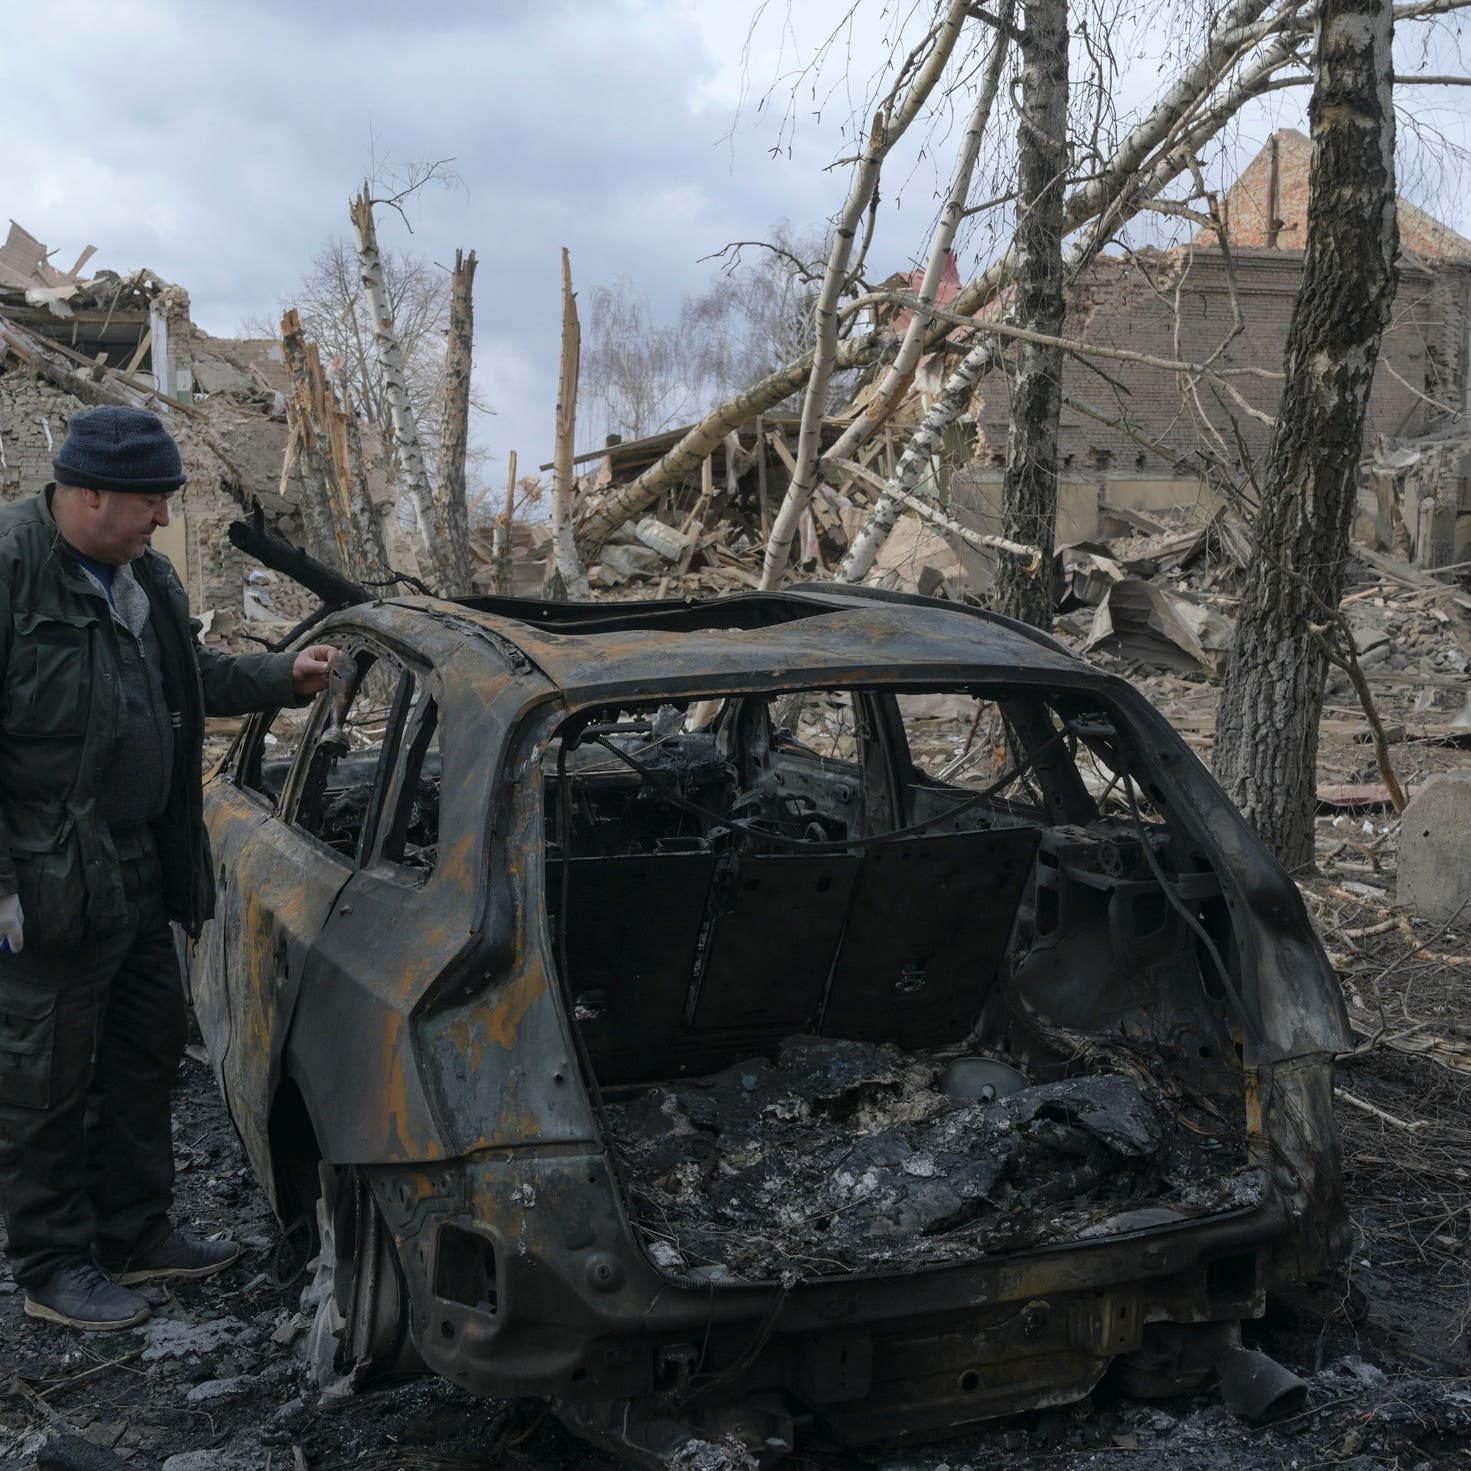 الأمم المتحدة تعلن حصيلة غير مؤكدة للقتلى في أوكرانيا